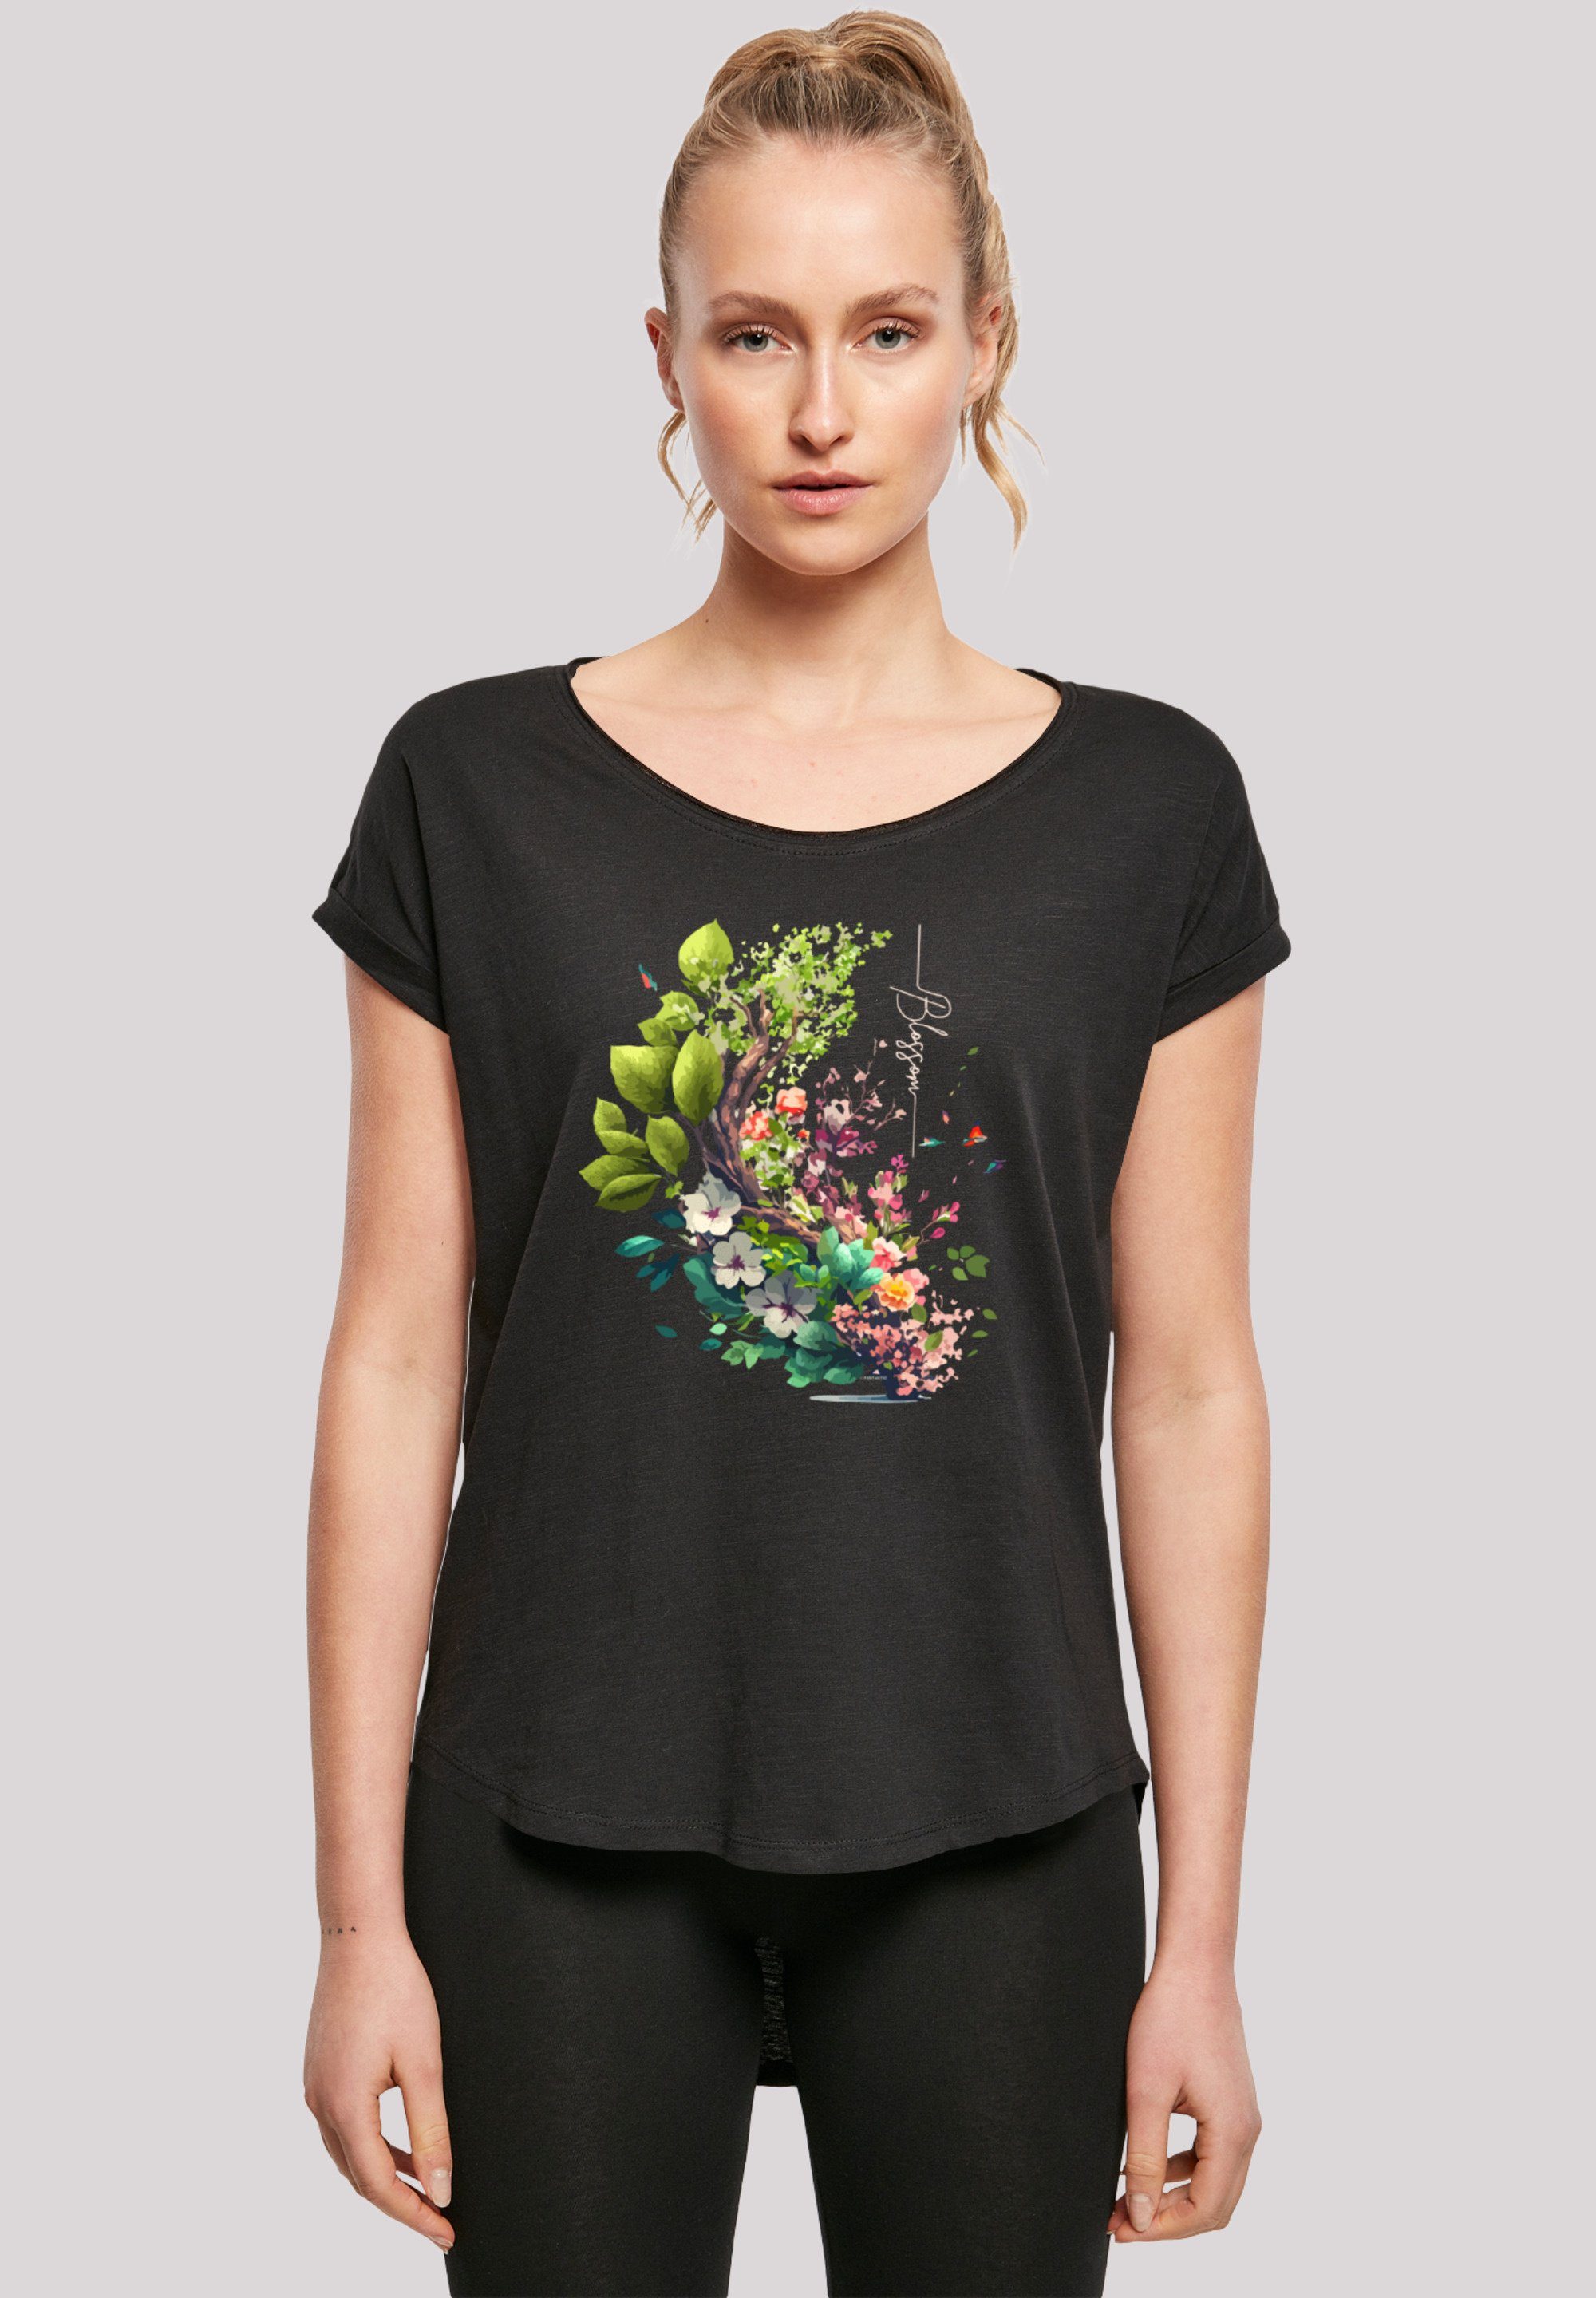 F4NT4STIC T-Shirt Baum mit Blumen weicher hohem Baumwollstoff mit Print, Tragekomfort Sehr